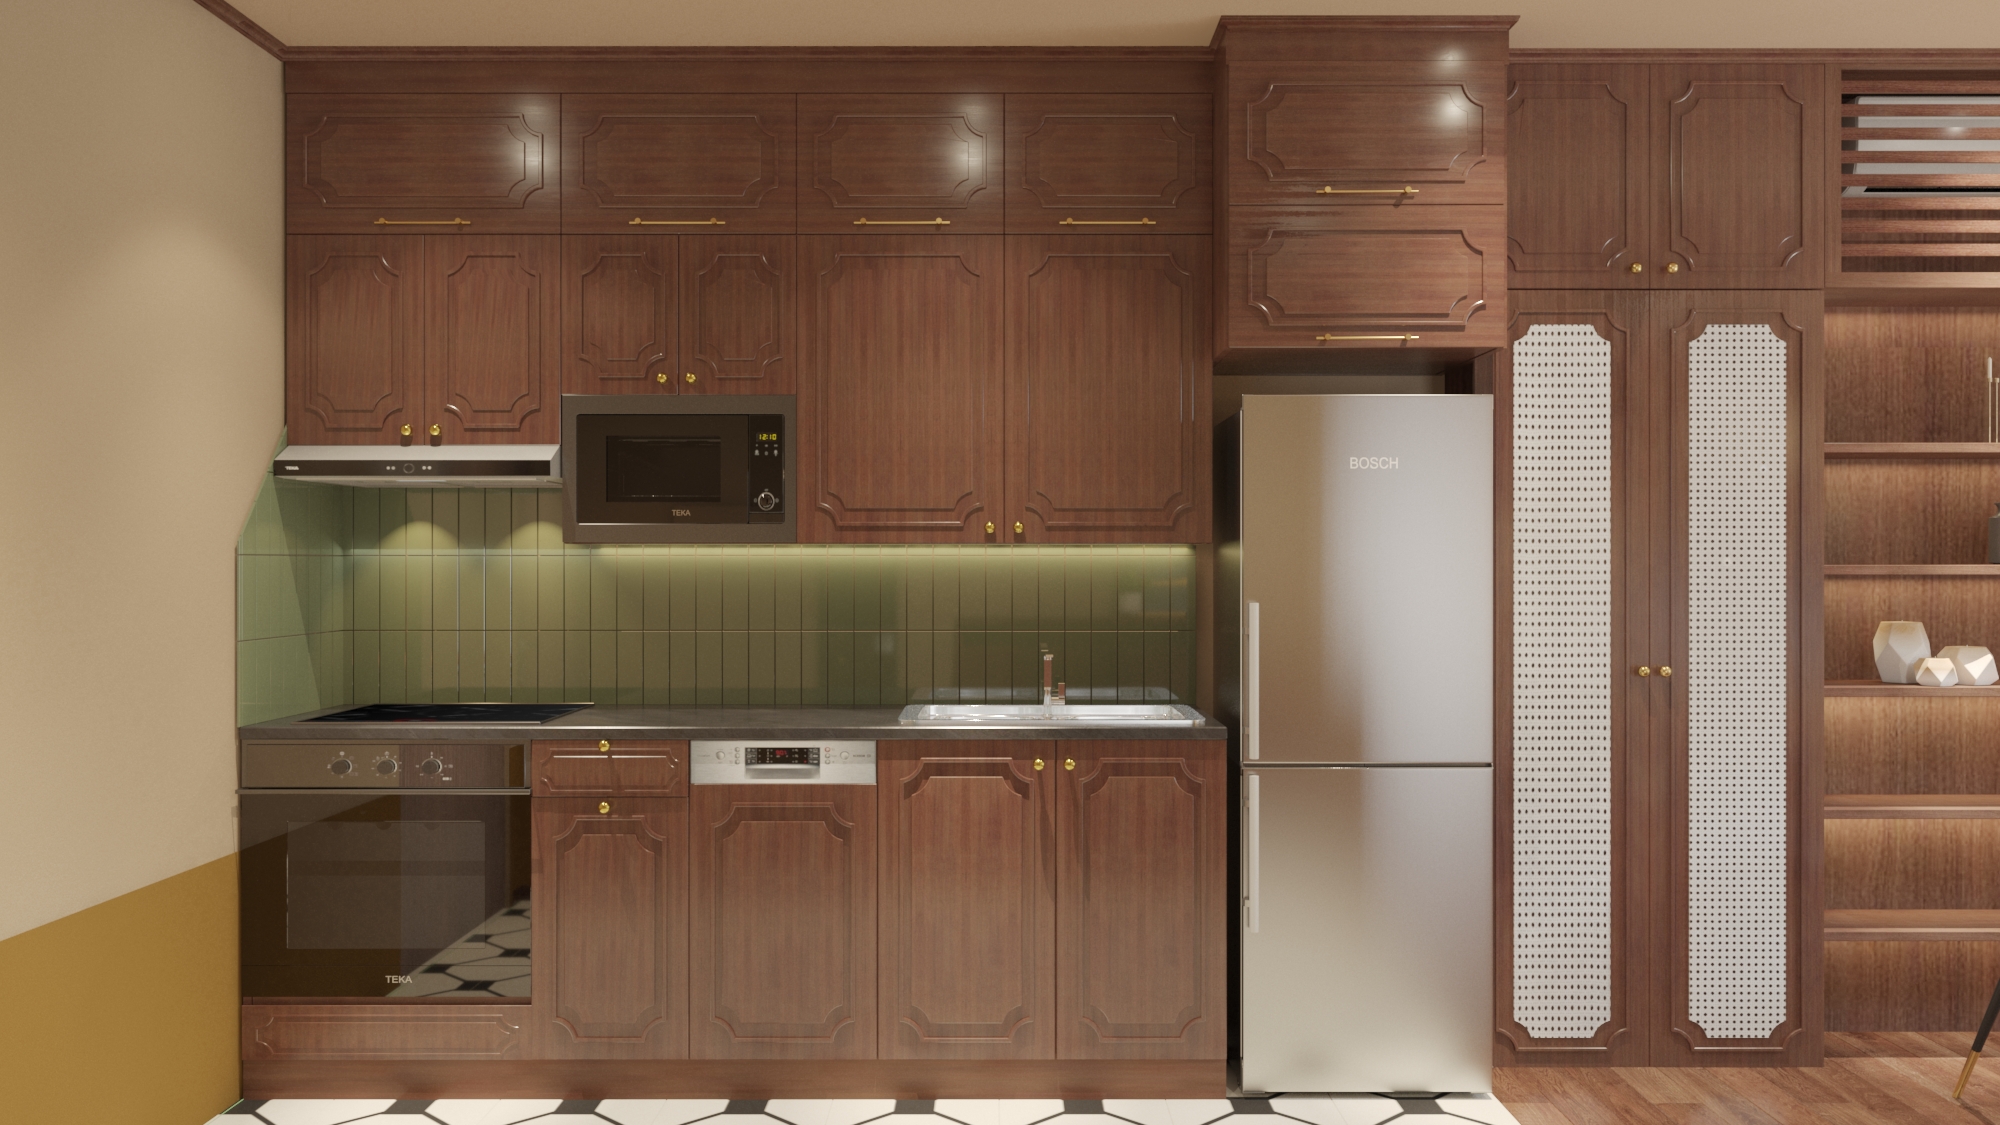 Thiết kế tủ bếp theo phong cách Hội An. Nguồn: dghome